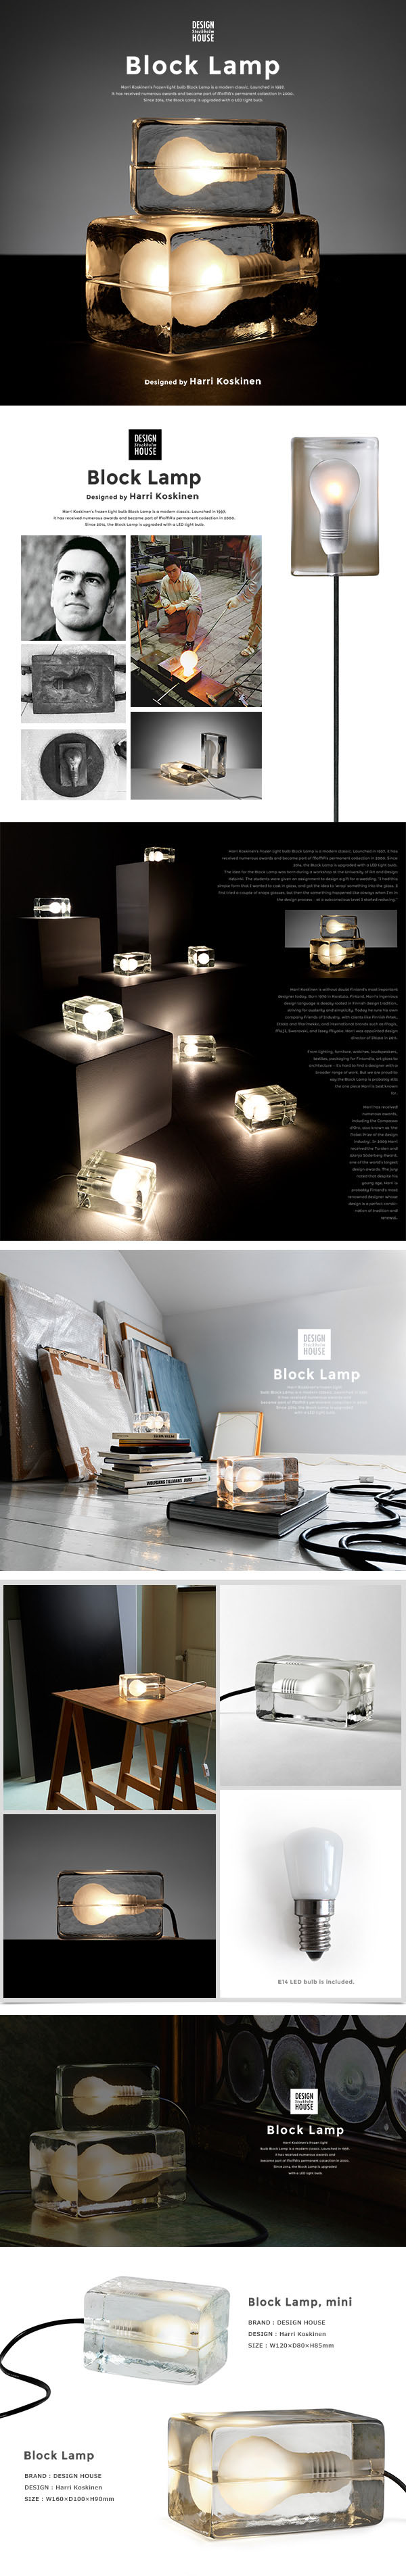 Design House Stockholm/ブロックランプ Block Lamp 照明 MoMA/ランプ/ライト/ガラス/北欧/デザインハウス  ストックホルム/インテリアライト stockholm-blocklamp ShinwaShop 通販 